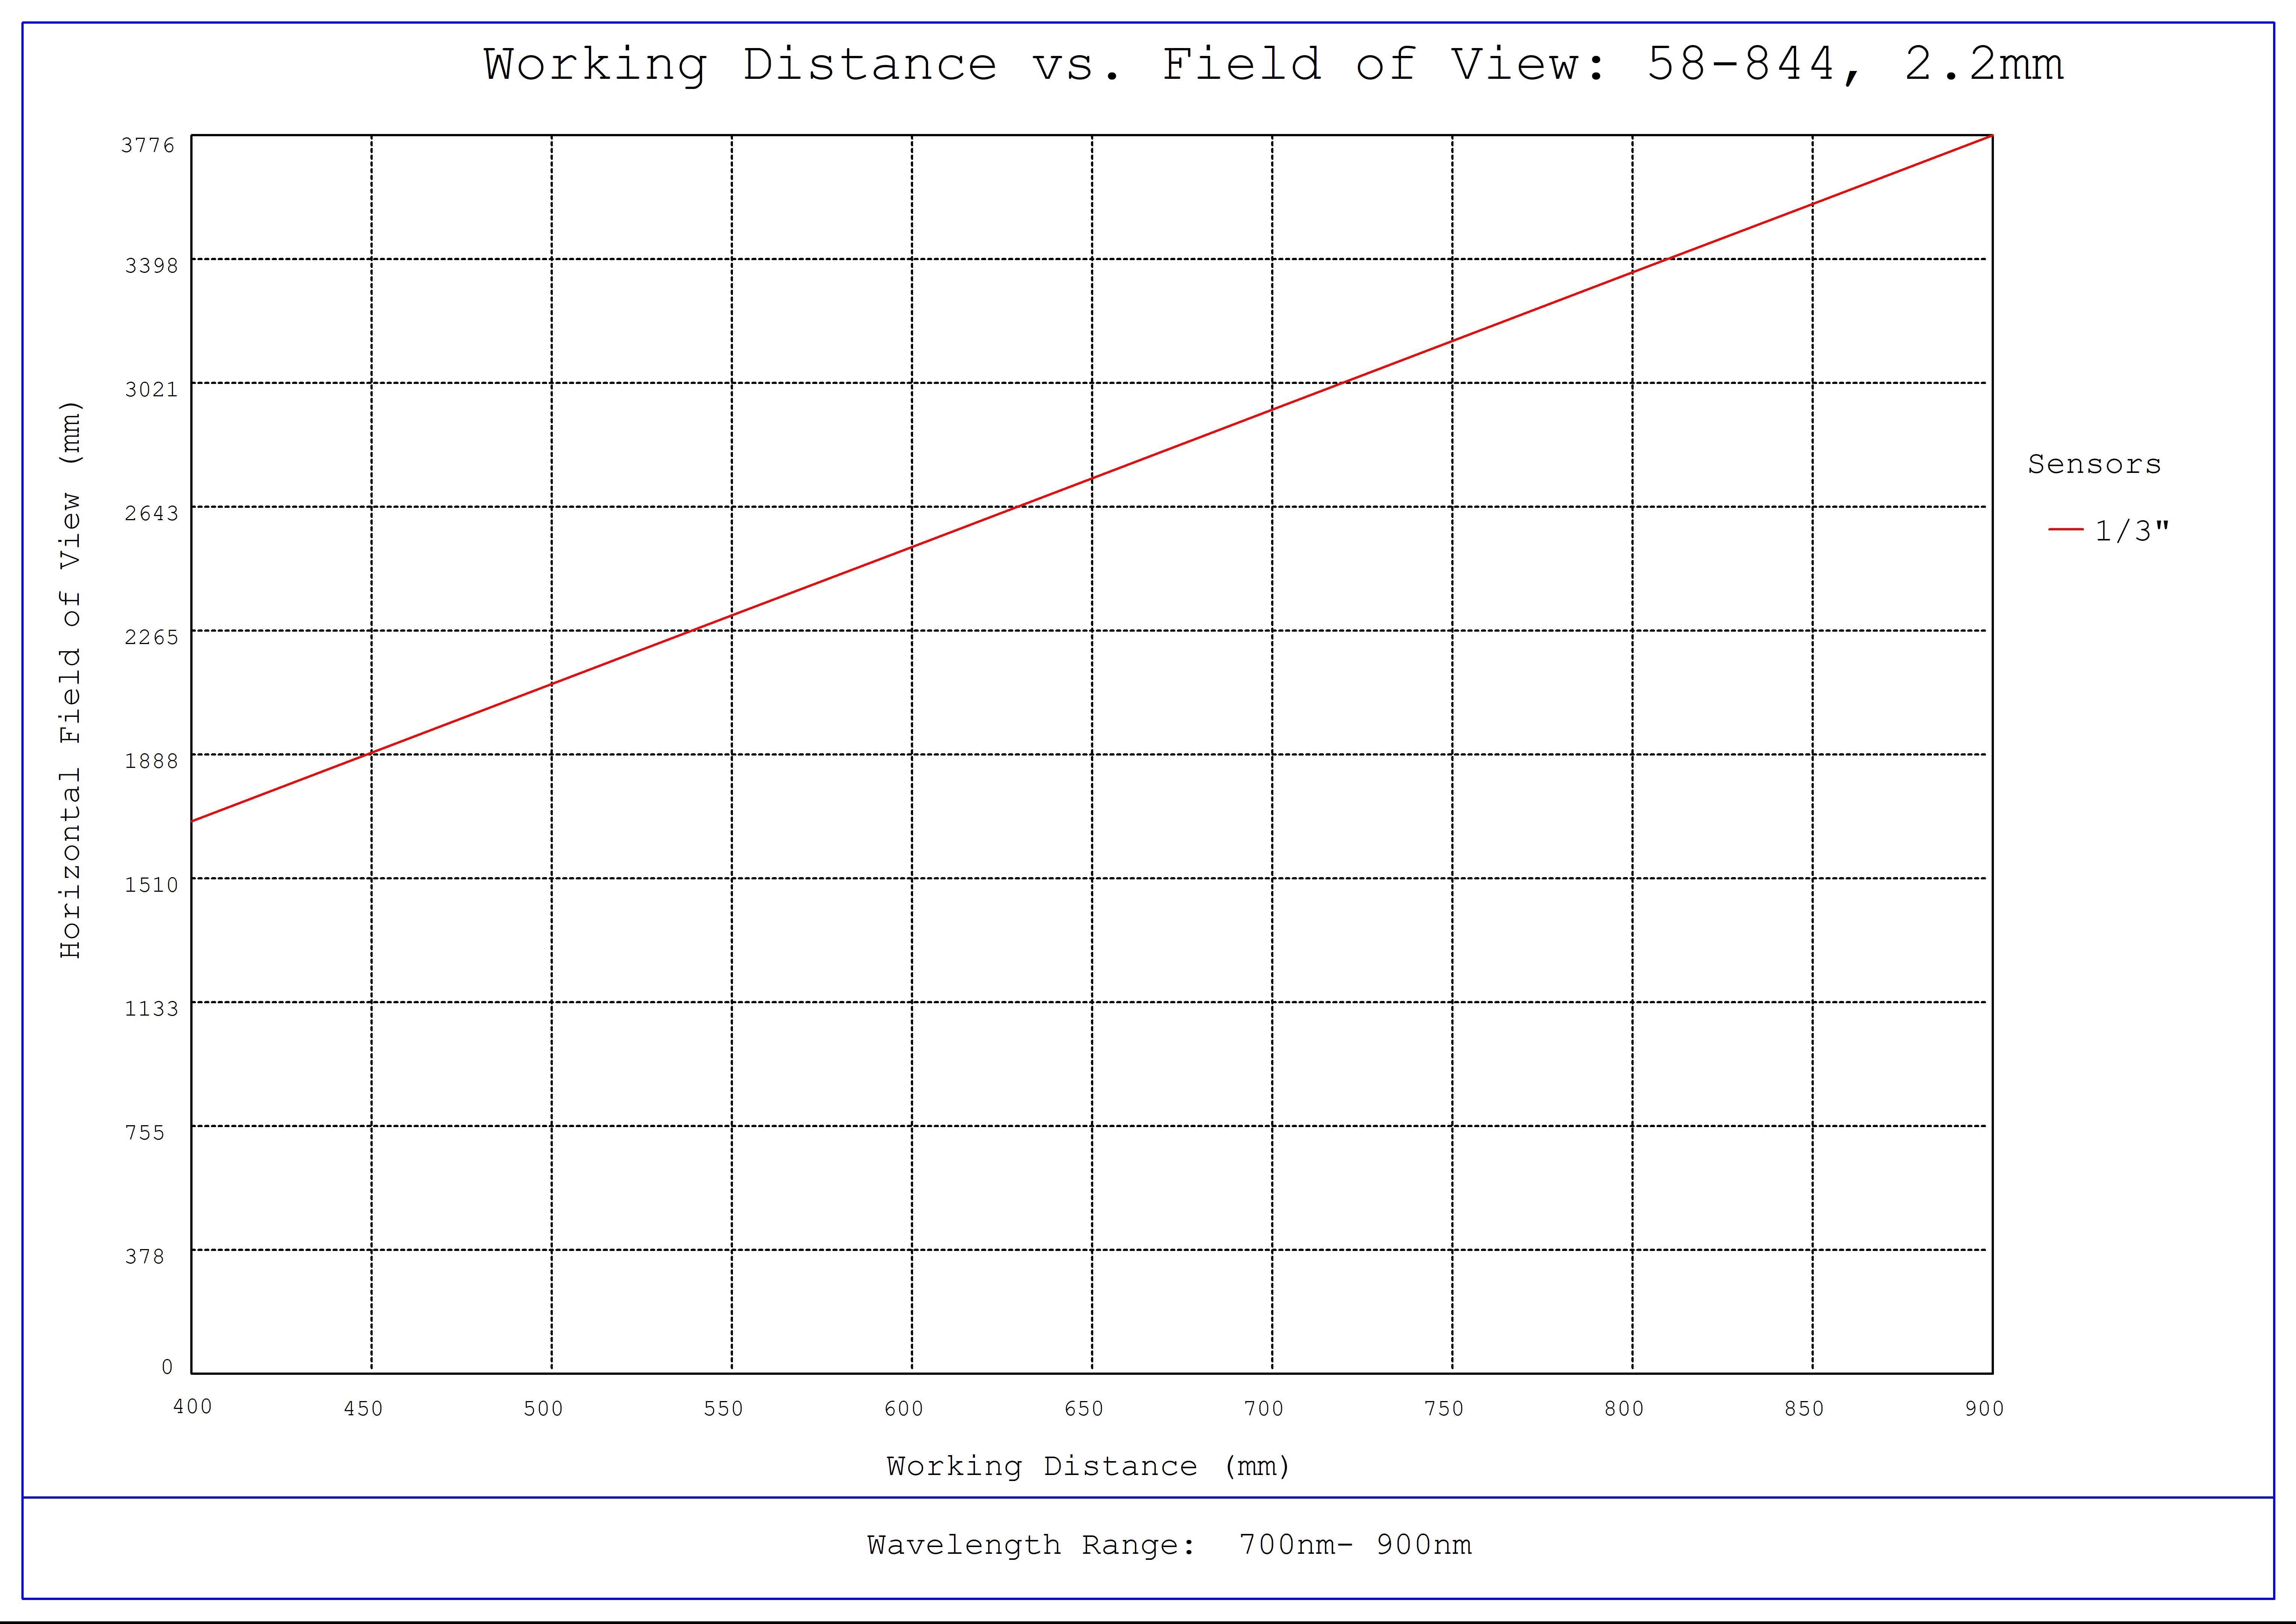 #58-844, f/2.0, NIR, 2.2mm HEO Series M12 Lens, Working Distance versus Field of View Plot